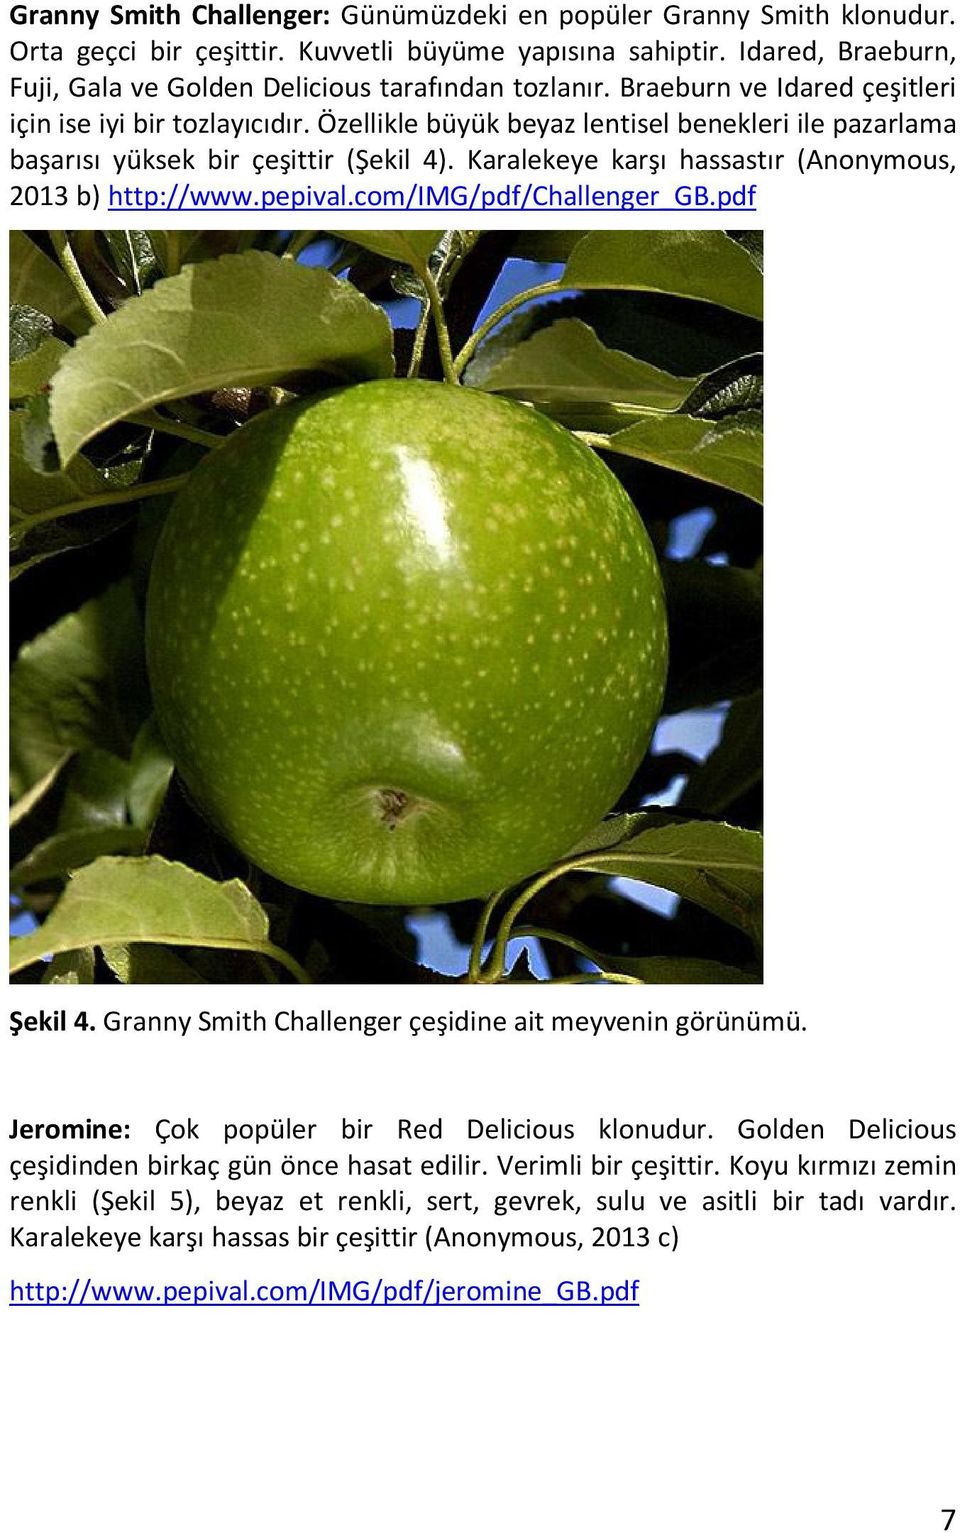 Karalekeye karşı hassastır (Anonymous, 2013 b) http://www.pepival.com/img/pdf/challenger_gb.pdf Şekil 4. Granny Smith Challenger çeşidine ait meyvenin görünümü.